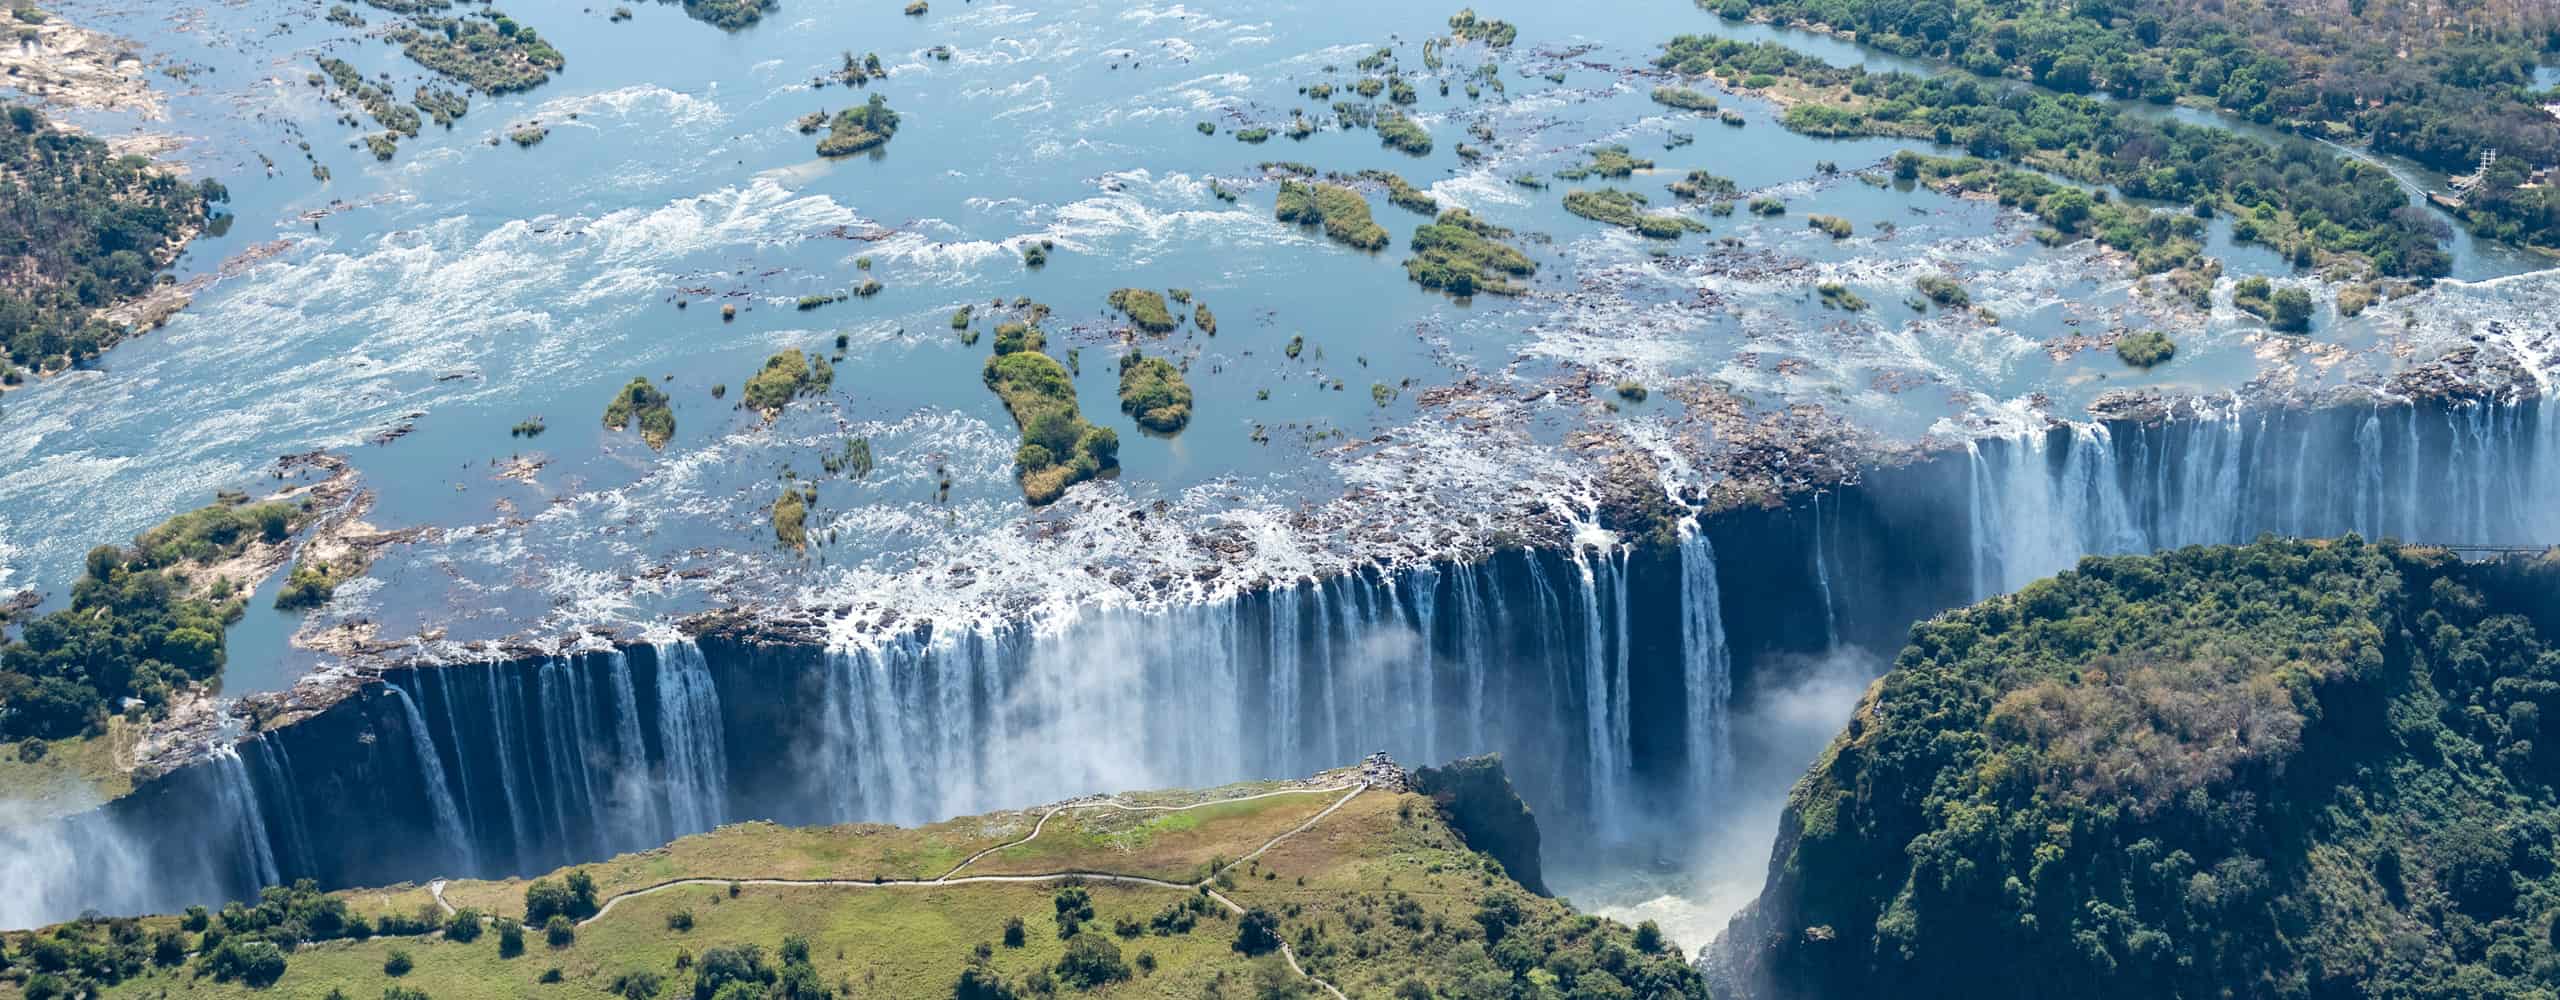 Victoria Falls On The Zambia Border